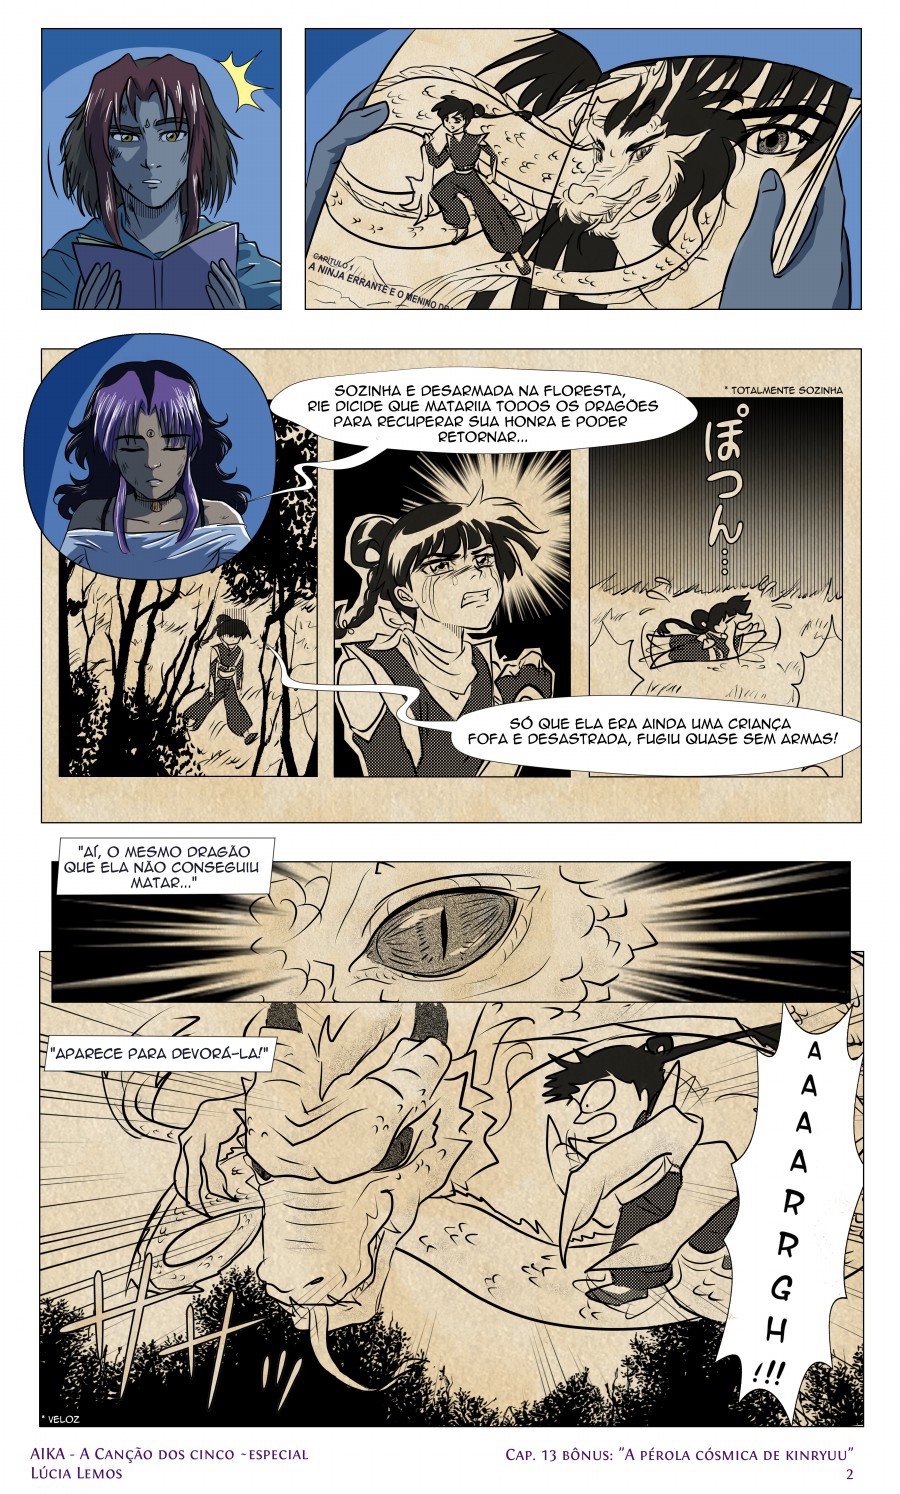 aika manga quadrinho projeto de quadrinho Japão anime Conclusão de Curso fantasia quadrinho antigo Roteiro